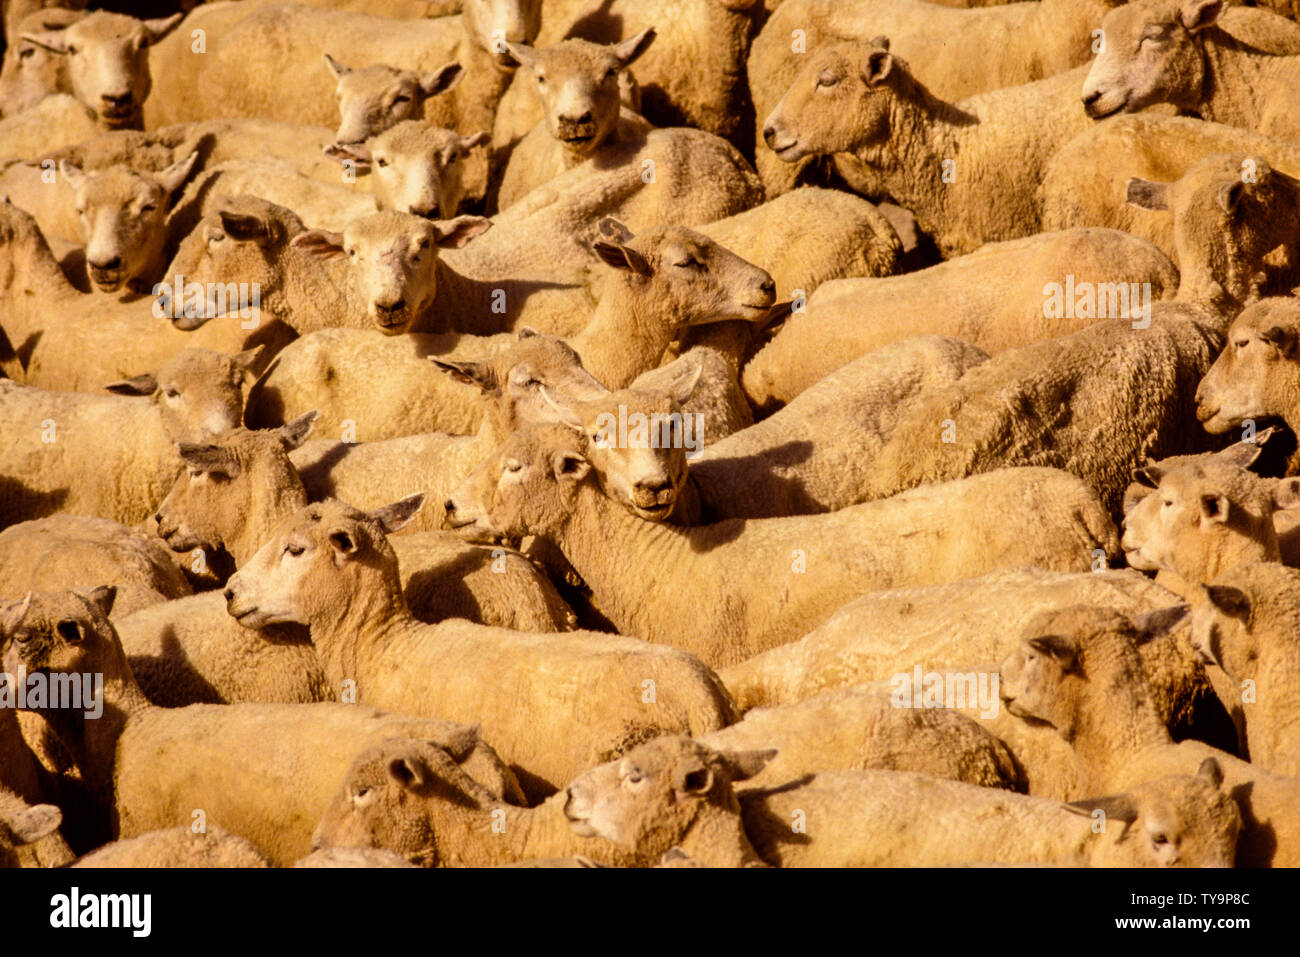 Nouvelle Zélande, île du Nord. Troupeau de moutons tondus. Photo : © Simon Grosset. Archive : image numérisé à partir d'un original de la transparence. Prise en novembre 1989 Banque D'Images